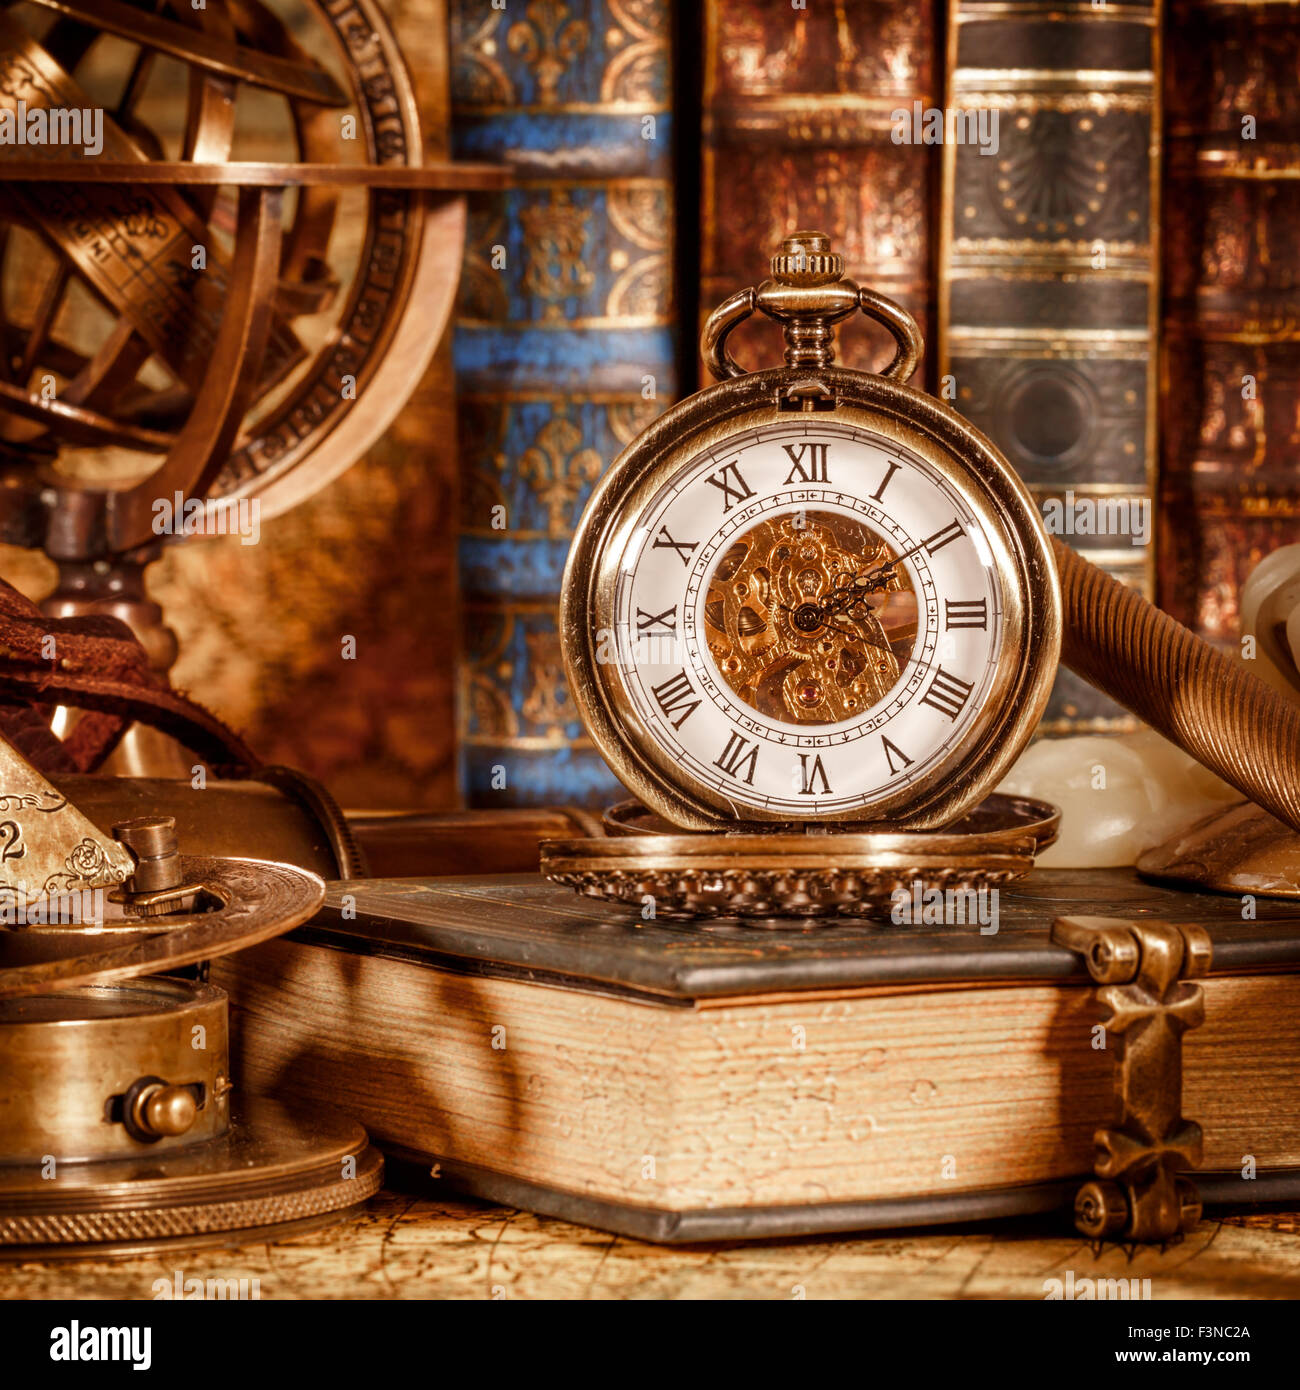 Vintage antico orologio da tasca sullo sfondo di libri antichi Foto stock -  Alamy